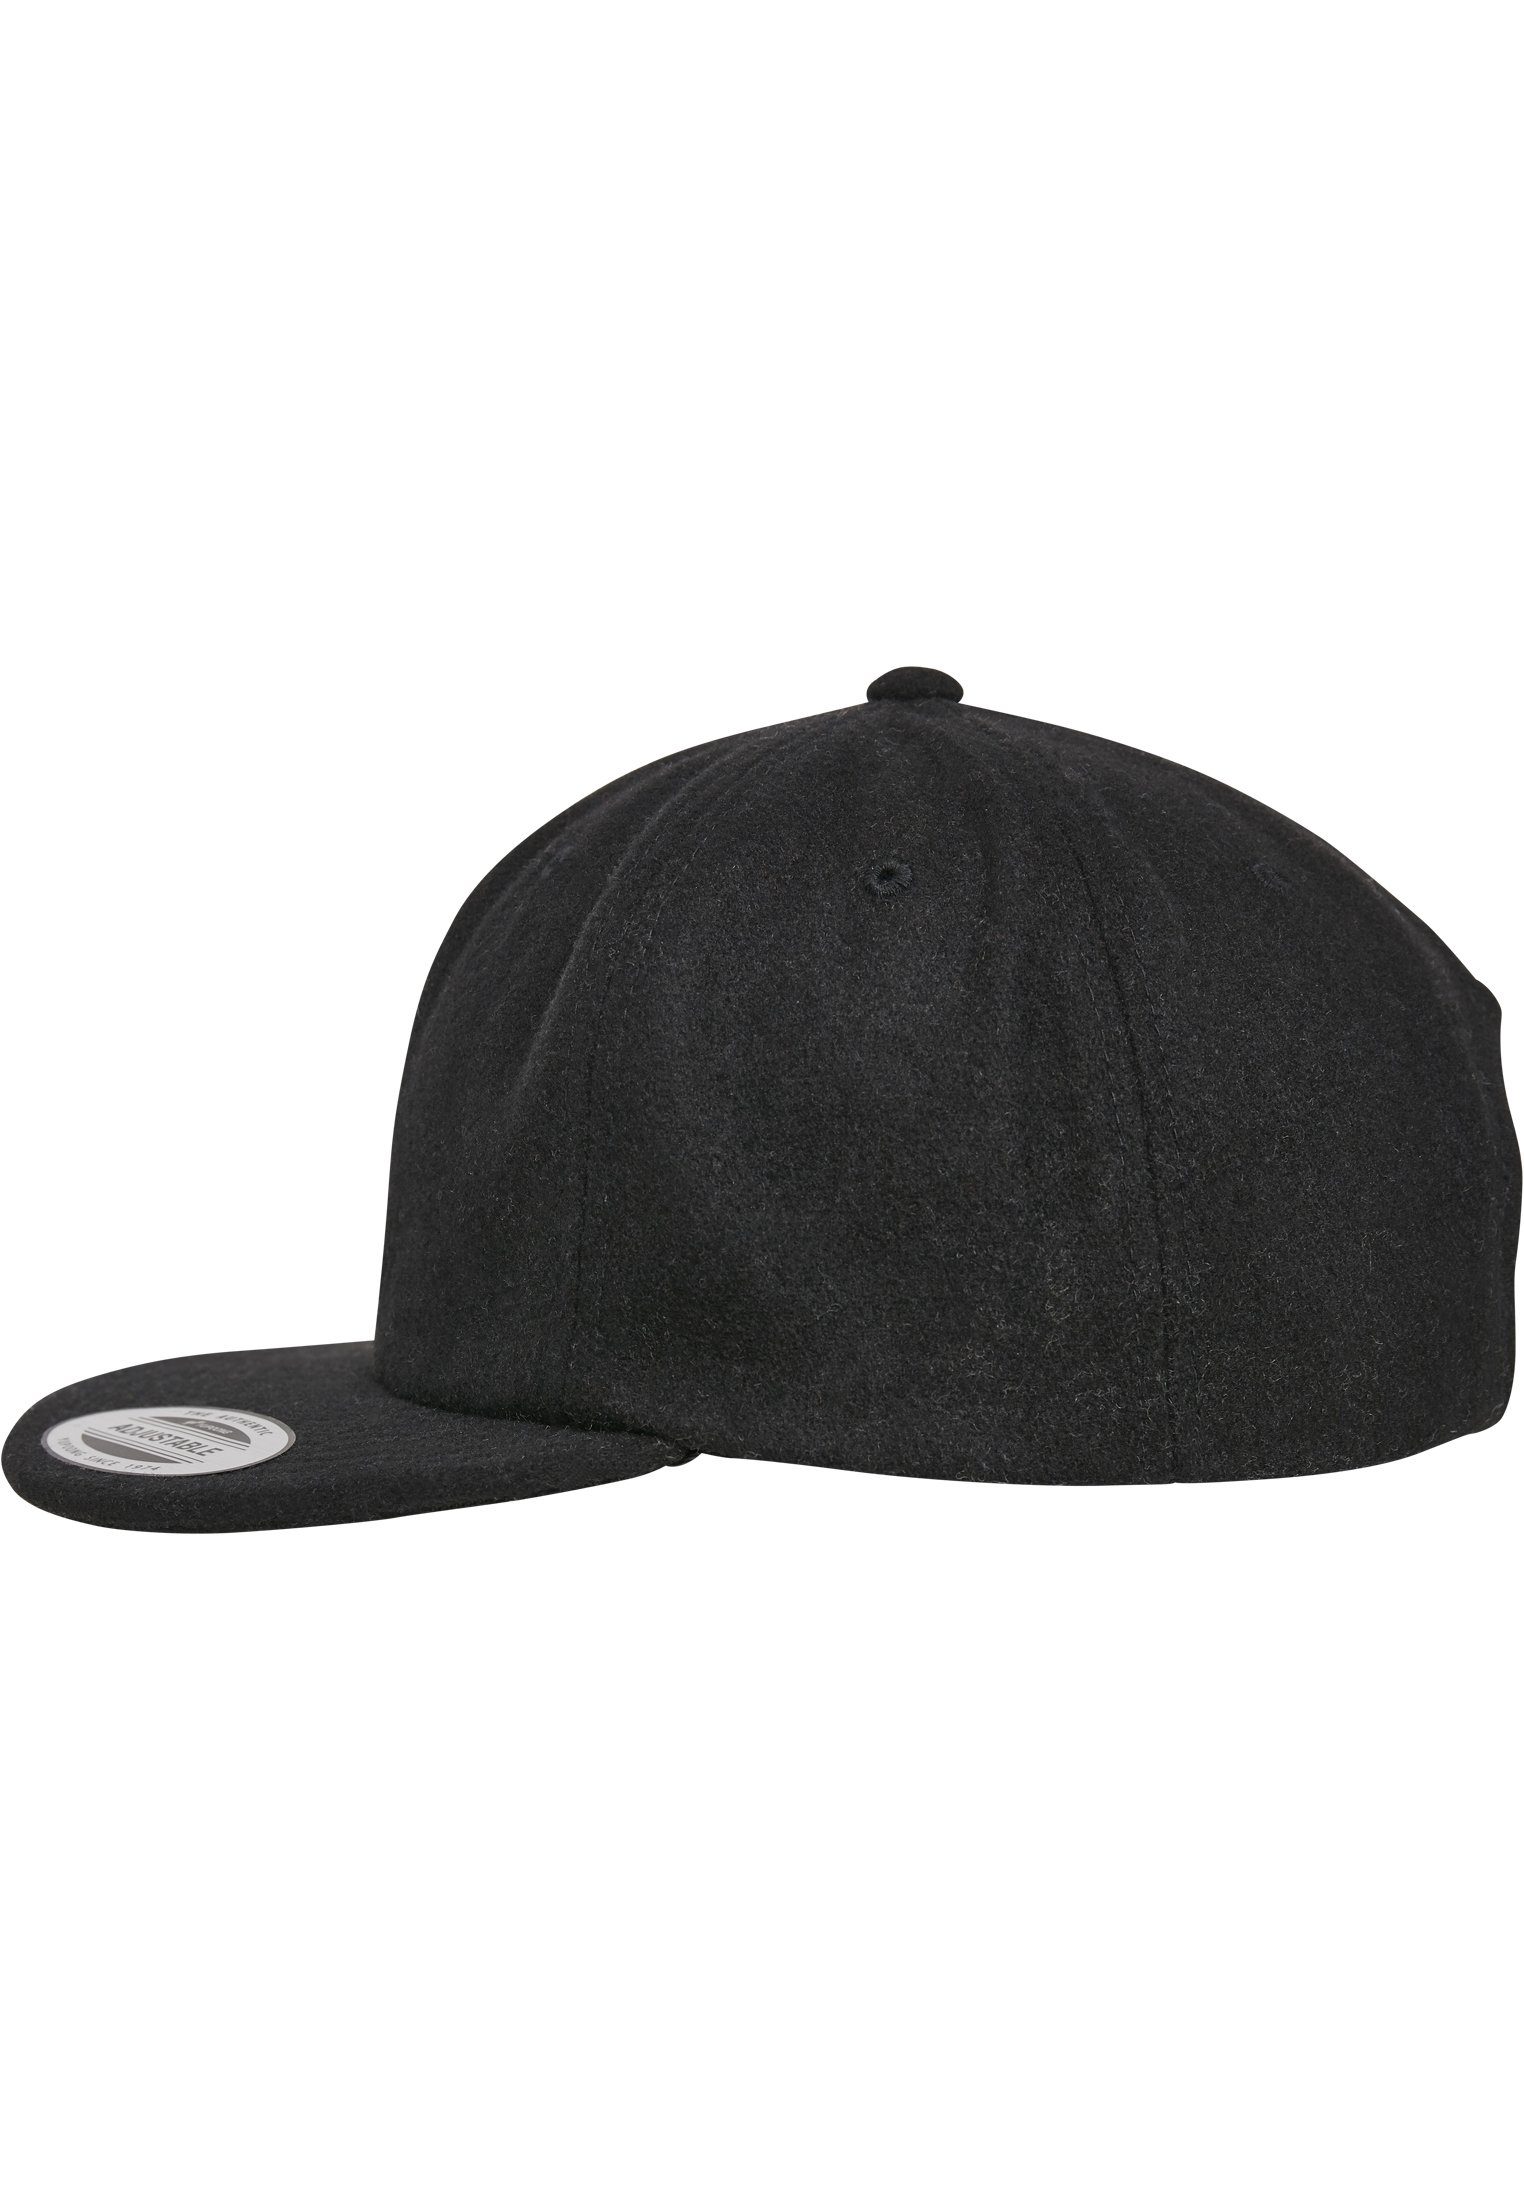 Flexfit Flex Cap Snapback black Melton Cap